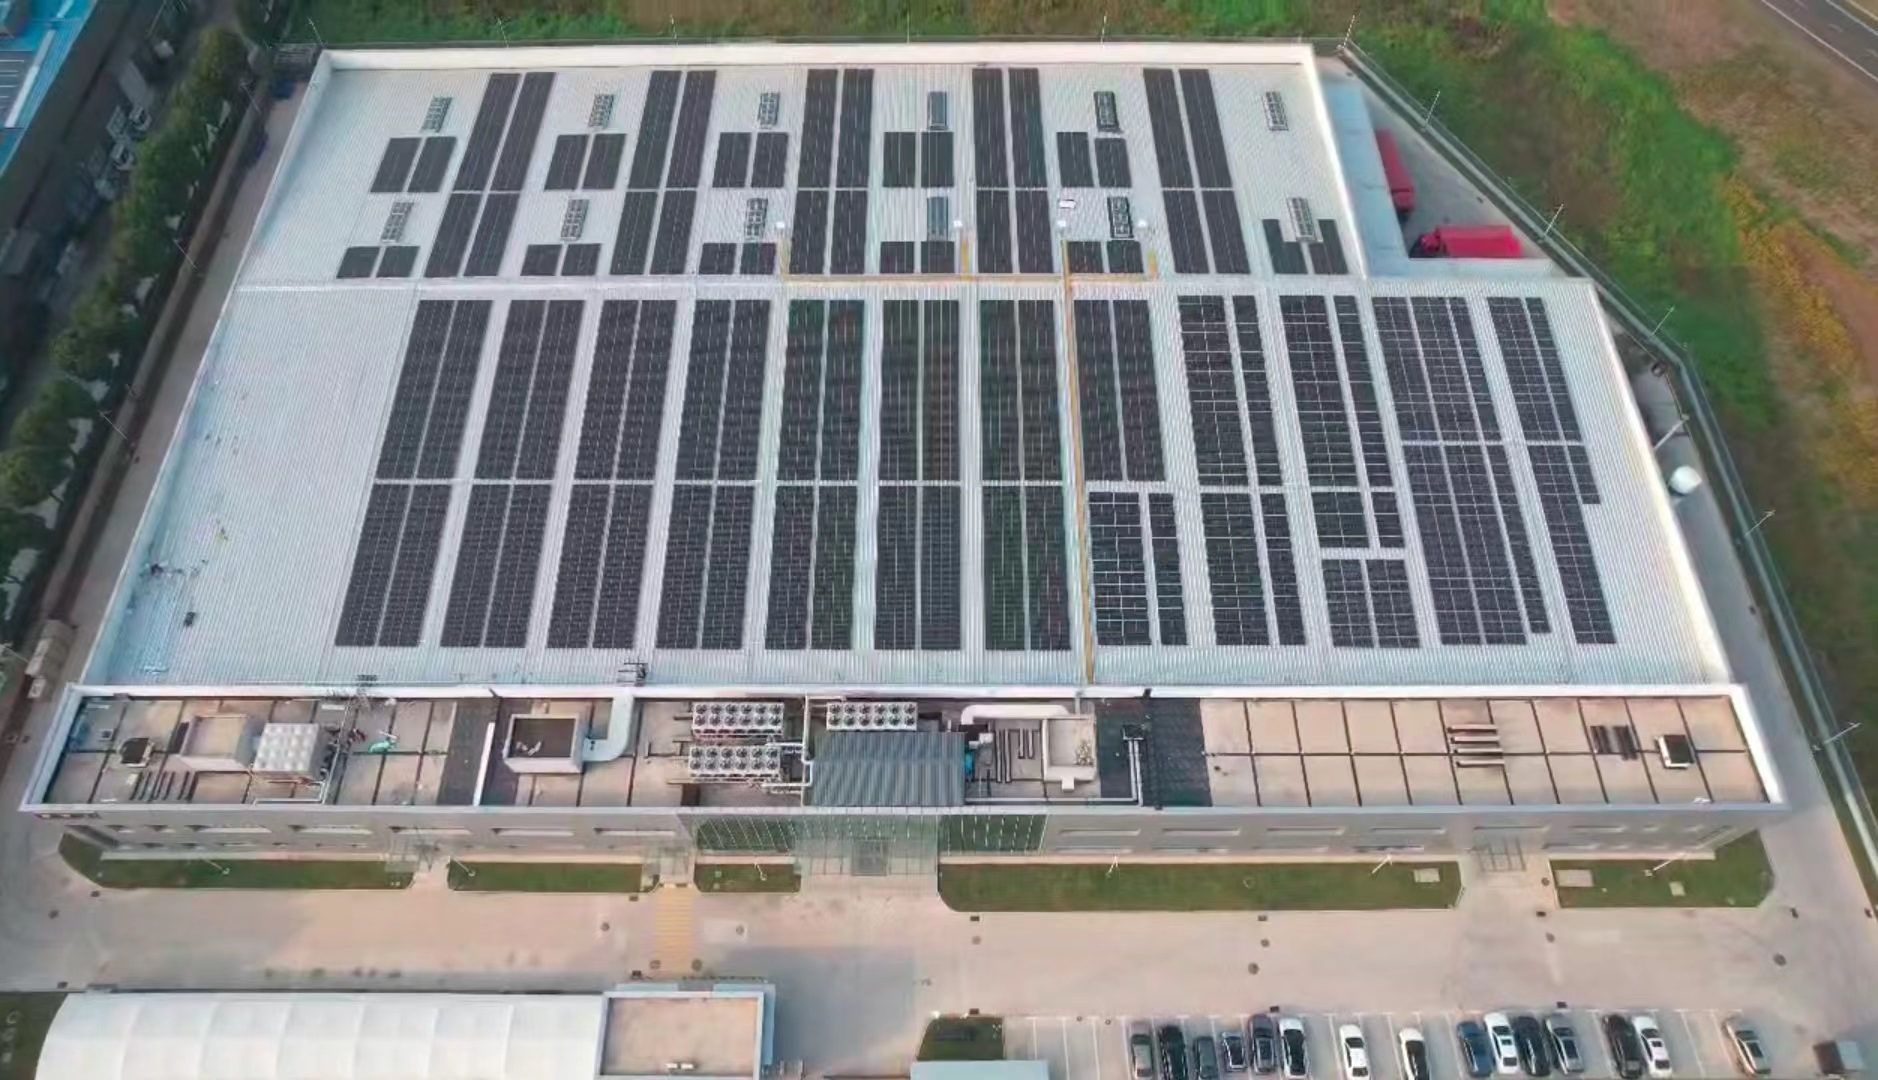 京西集团江苏常州金坛工厂屋顶光伏发电每年产生近1000兆瓦时绿色电能.jpg